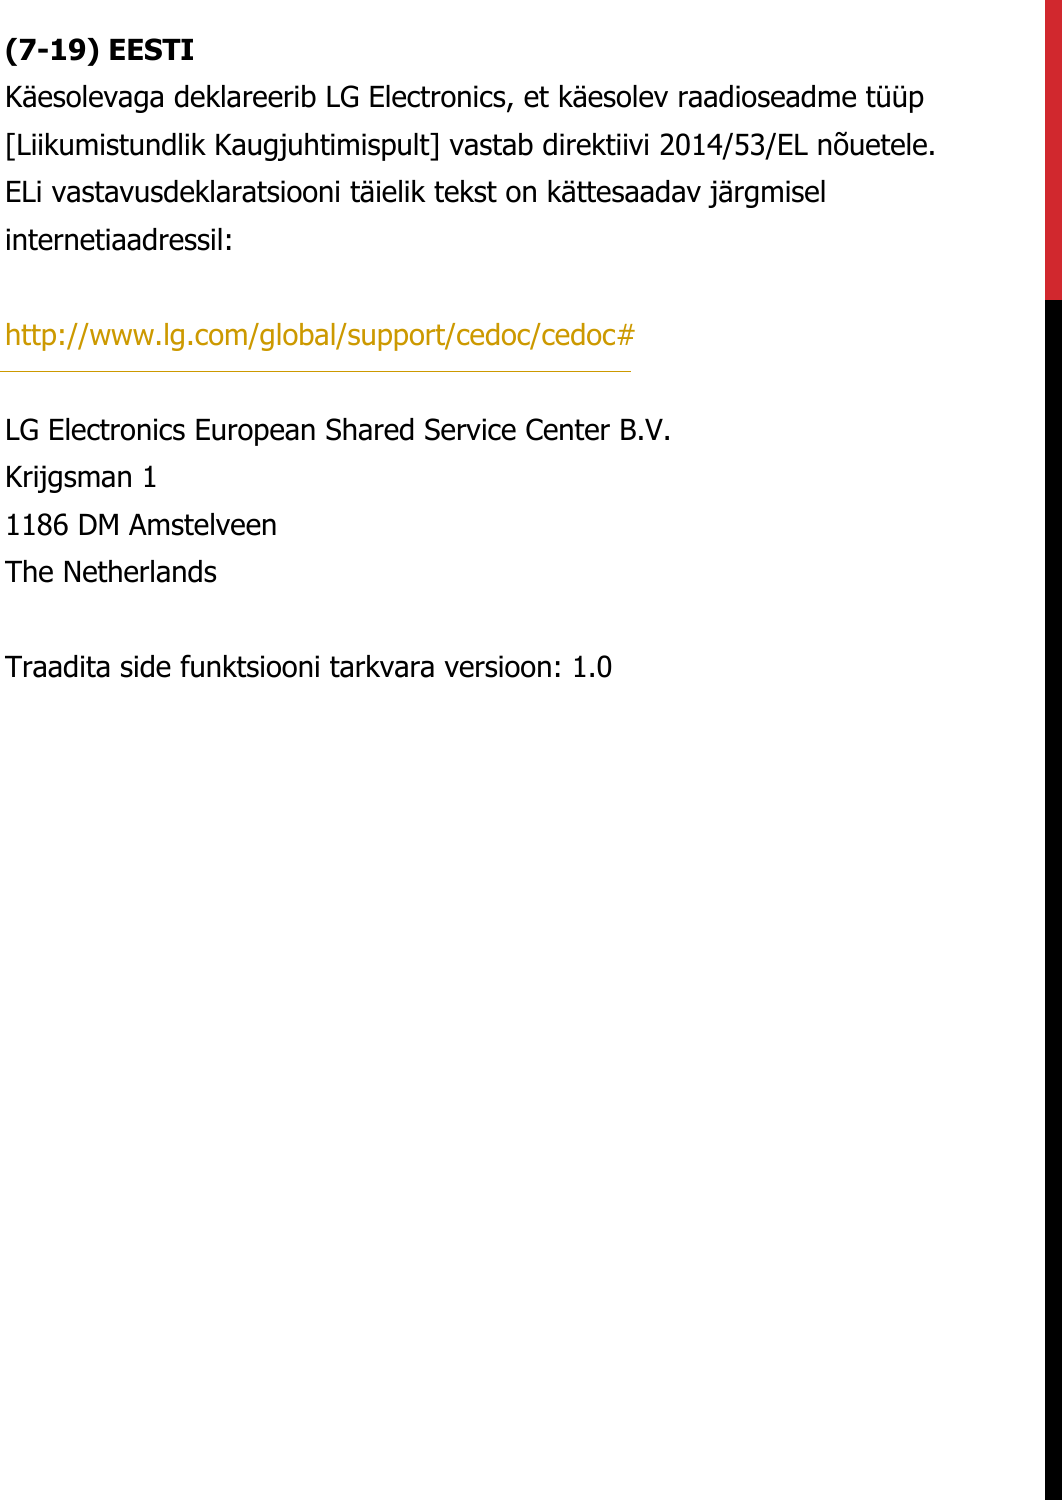 (7-19) EESTIKäesolevaga deklareerib LG Electronics, et käesolev raadioseadme tüüp [Liikumistundlik Kaugjuhtimispult] vastab direktiivi 2014/53/EL nõuetele. ELi vastavusdeklaratsiooni täielik tekst on kättesaadav järgmisel internetiaadressil:   http://www.lg.com/global/support/cedoc/cedoc#   LG Electronics European Shared Service Center B.V.  Krijgsman 1  1186 DM Amstelveen  The Netherlands   Traadita side funktsiooni tarkvara versioon: 1.0